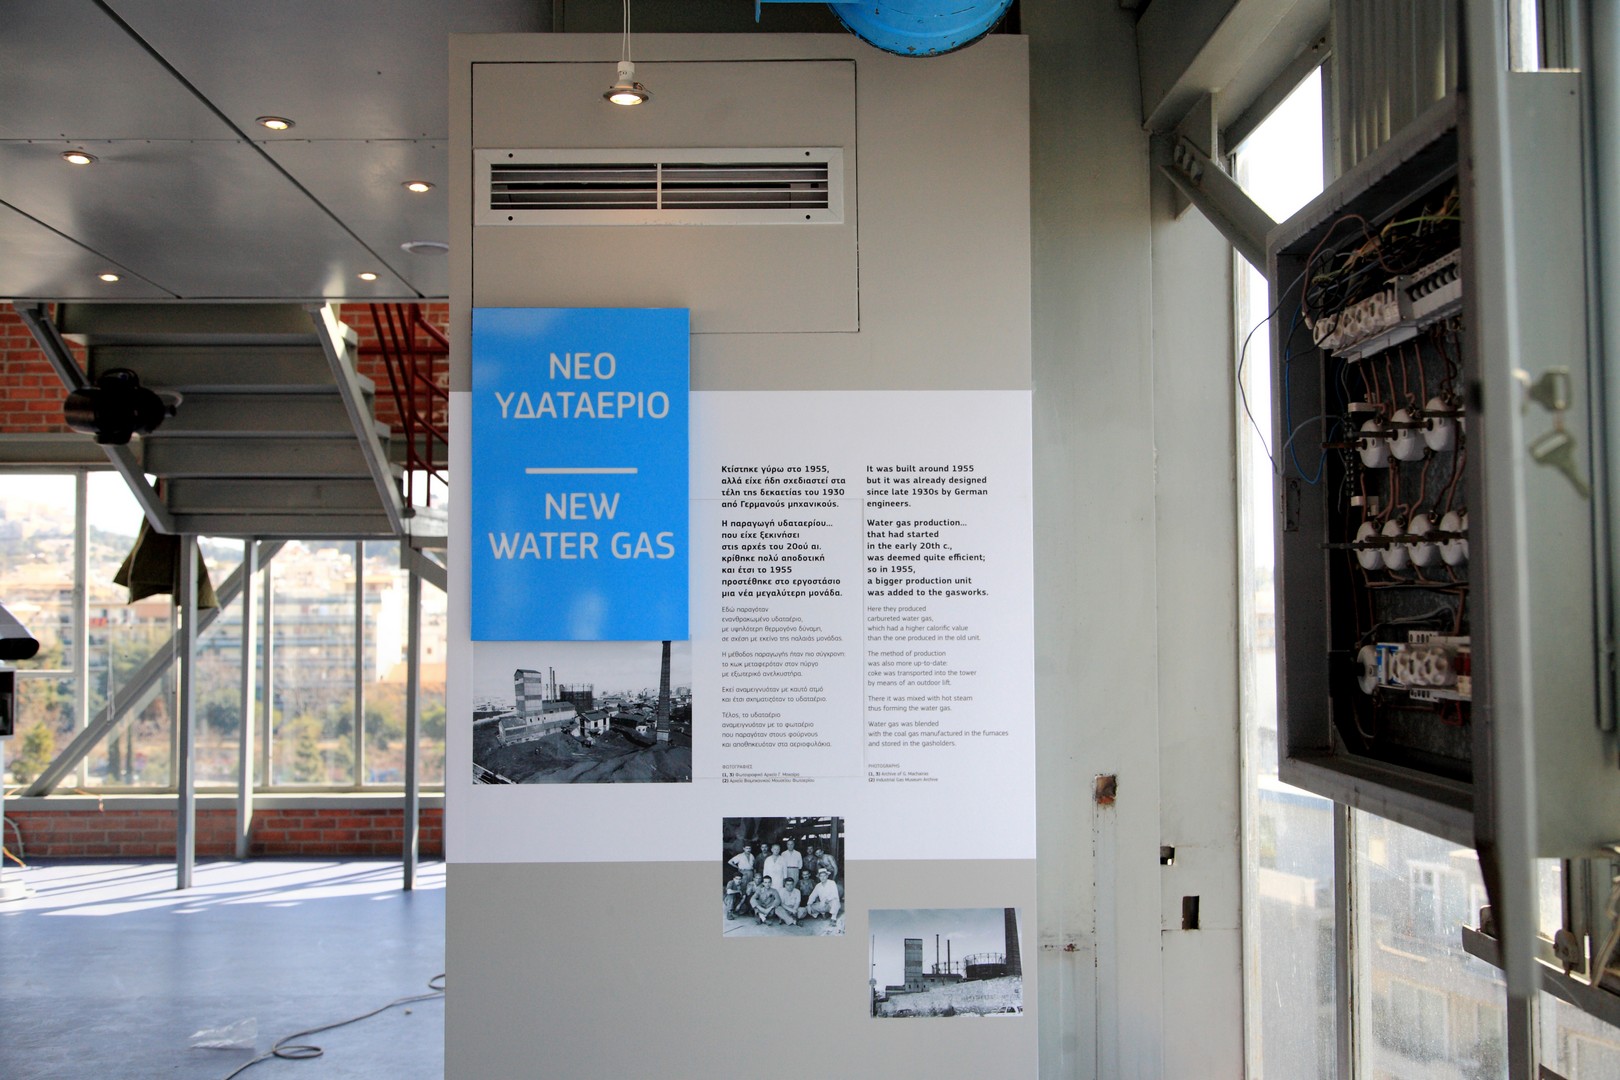 Πληροφορίες για το Νέο Υδαταέριο, το κτίριο στο οποίο παρασκευάζονταν το υδαταέριο, καύσιμο αέριο από την ανάμειξη κωχ με ατμό σε θερμοκρασία άνω των 1000 βαθμών Κελσίου. Πηγή: Βιομηχανικό Μουσείο Φωταερίου, Το Εργοστάσιο Φωταερίου της Αθήνας, Τεχνόπολις Δήμου Αθηναίων 